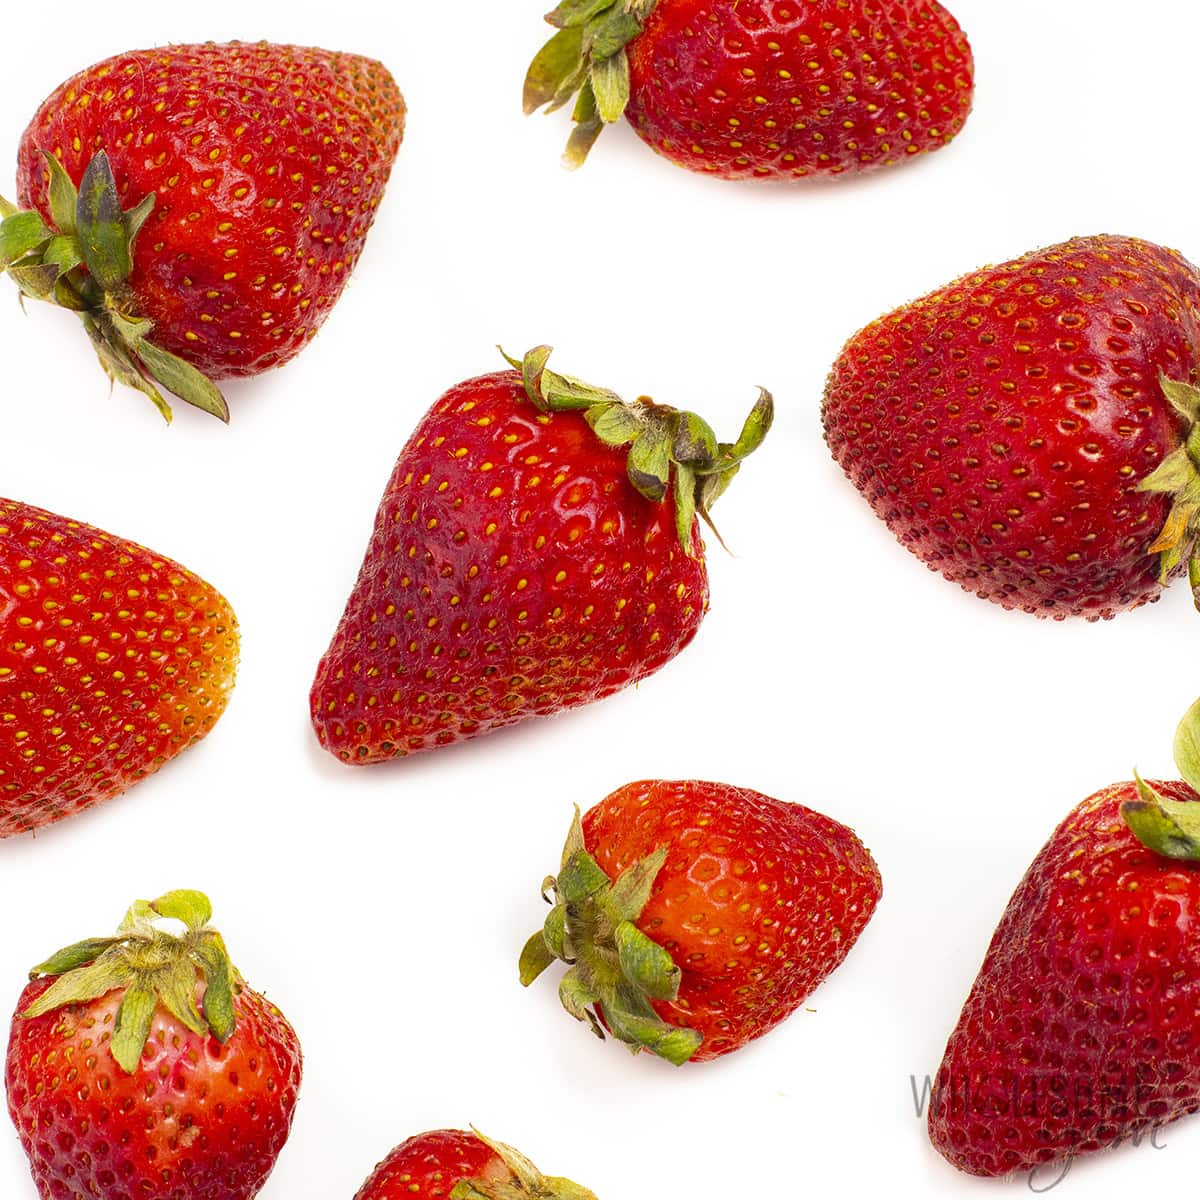 草莓是酮类吗?草莓中的碳水化合物含量很低，包括图中显示的新鲜草莓。